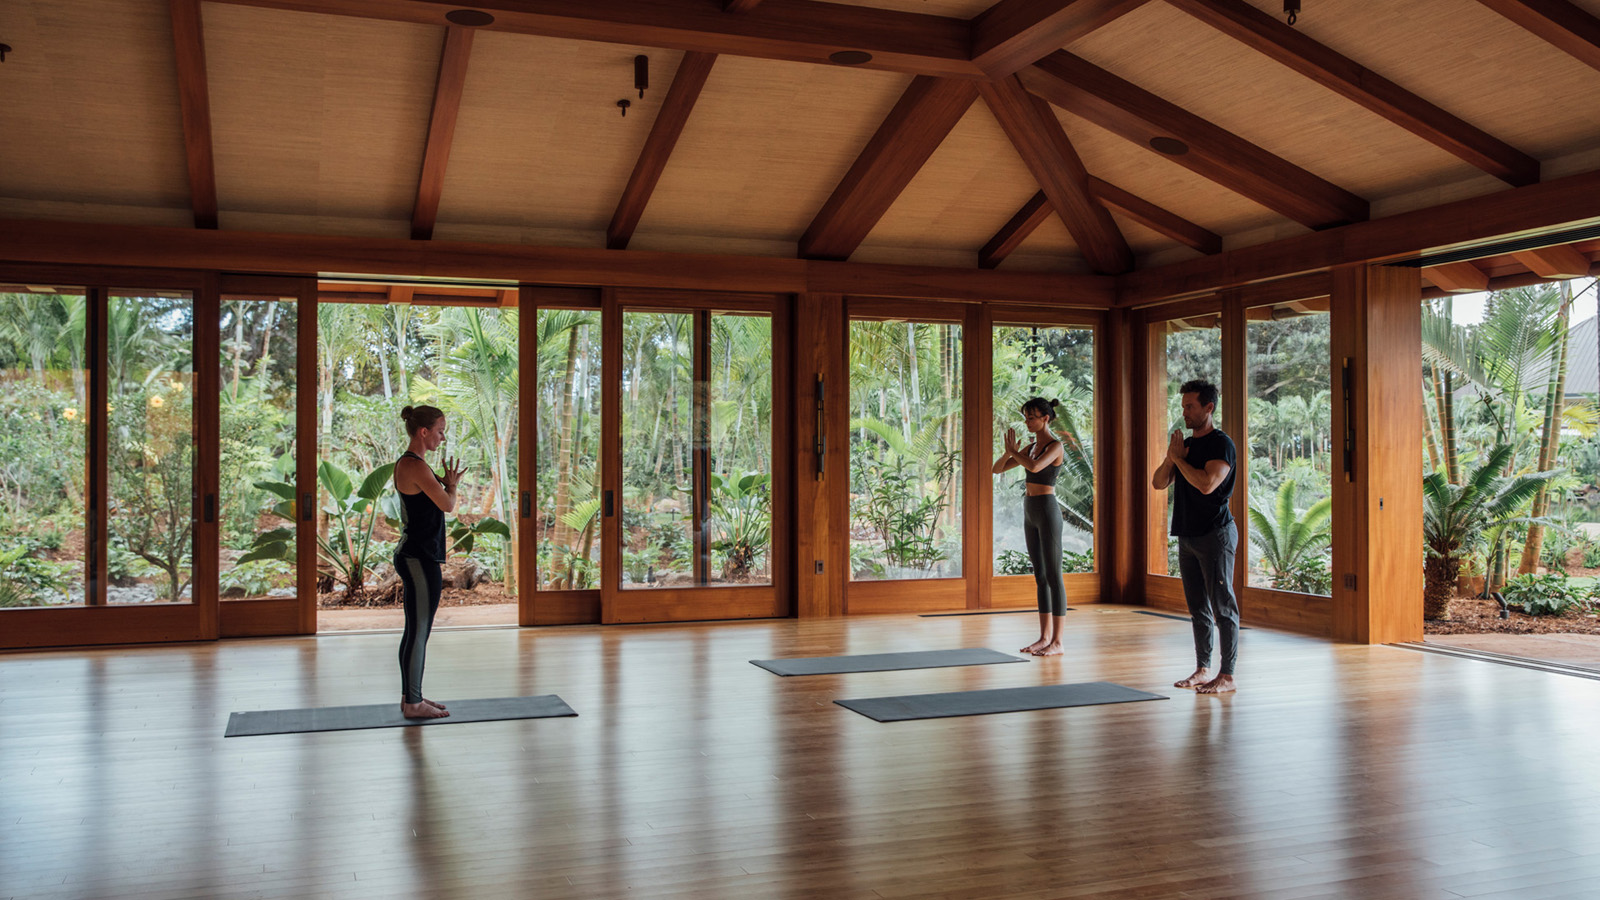 Sensei Lanai 提供有一系列瑜珈、静坐、健身课程，一步步引领游客平衡身心、找回健康。